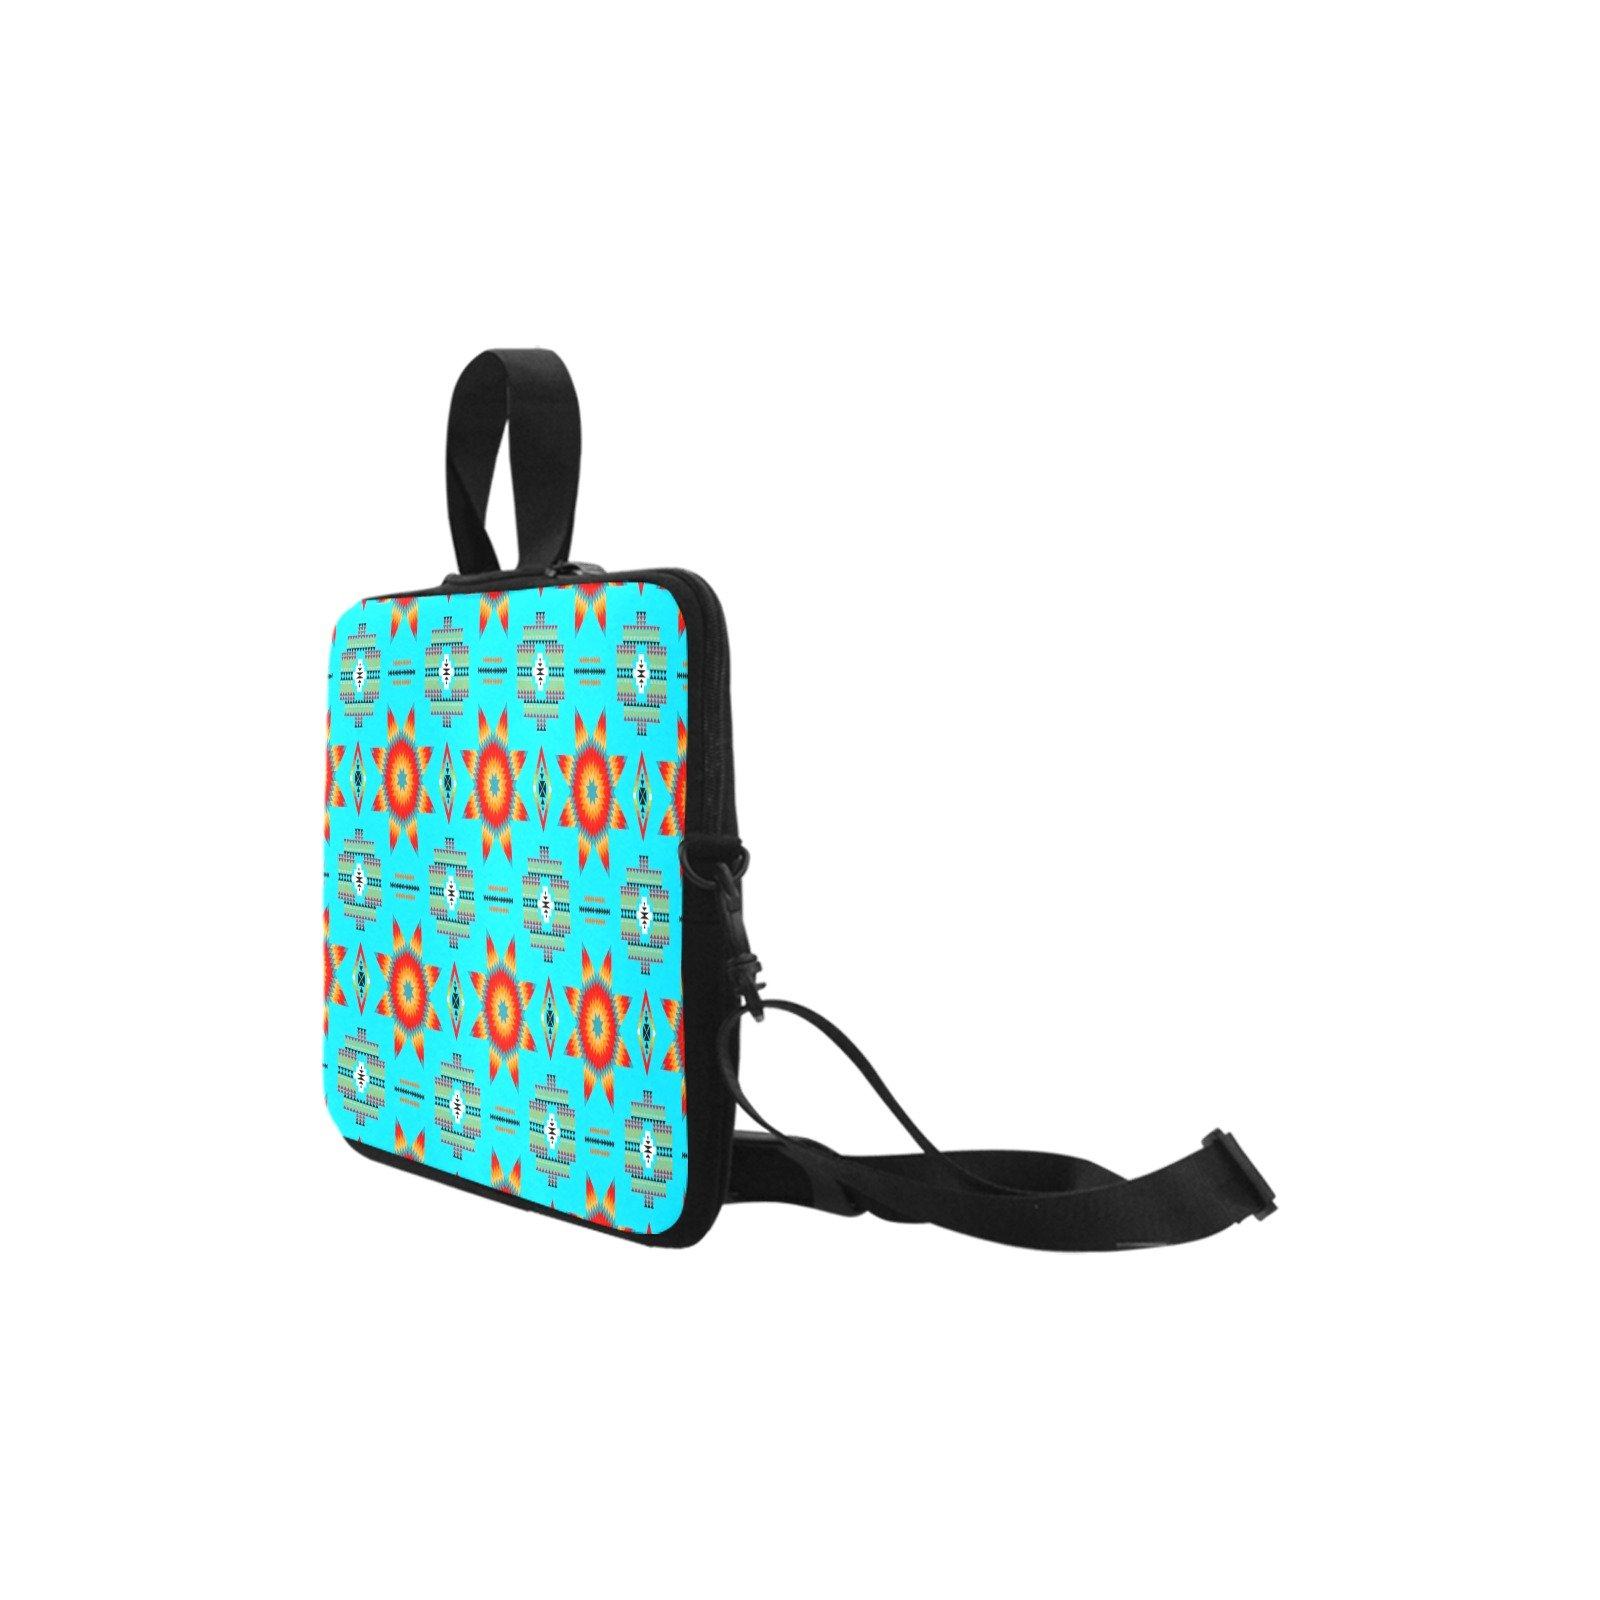 Rising Star Harvest Moon Laptop Handbags 11" bag e-joyer 